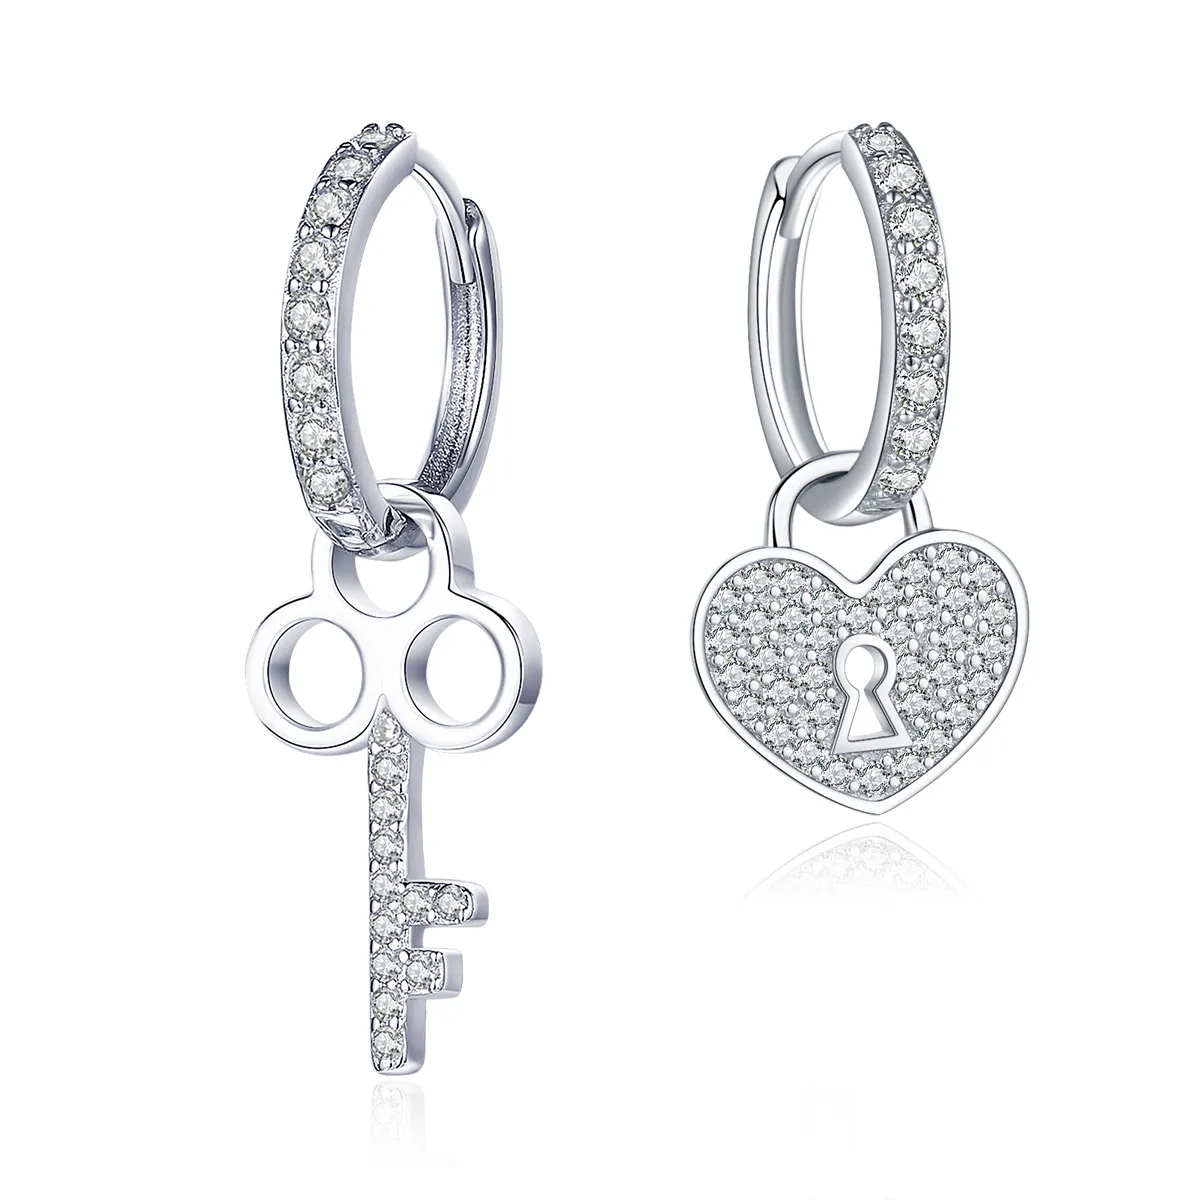 Pandora Style Silver Key and Lock Hoop Earrings - SCE577